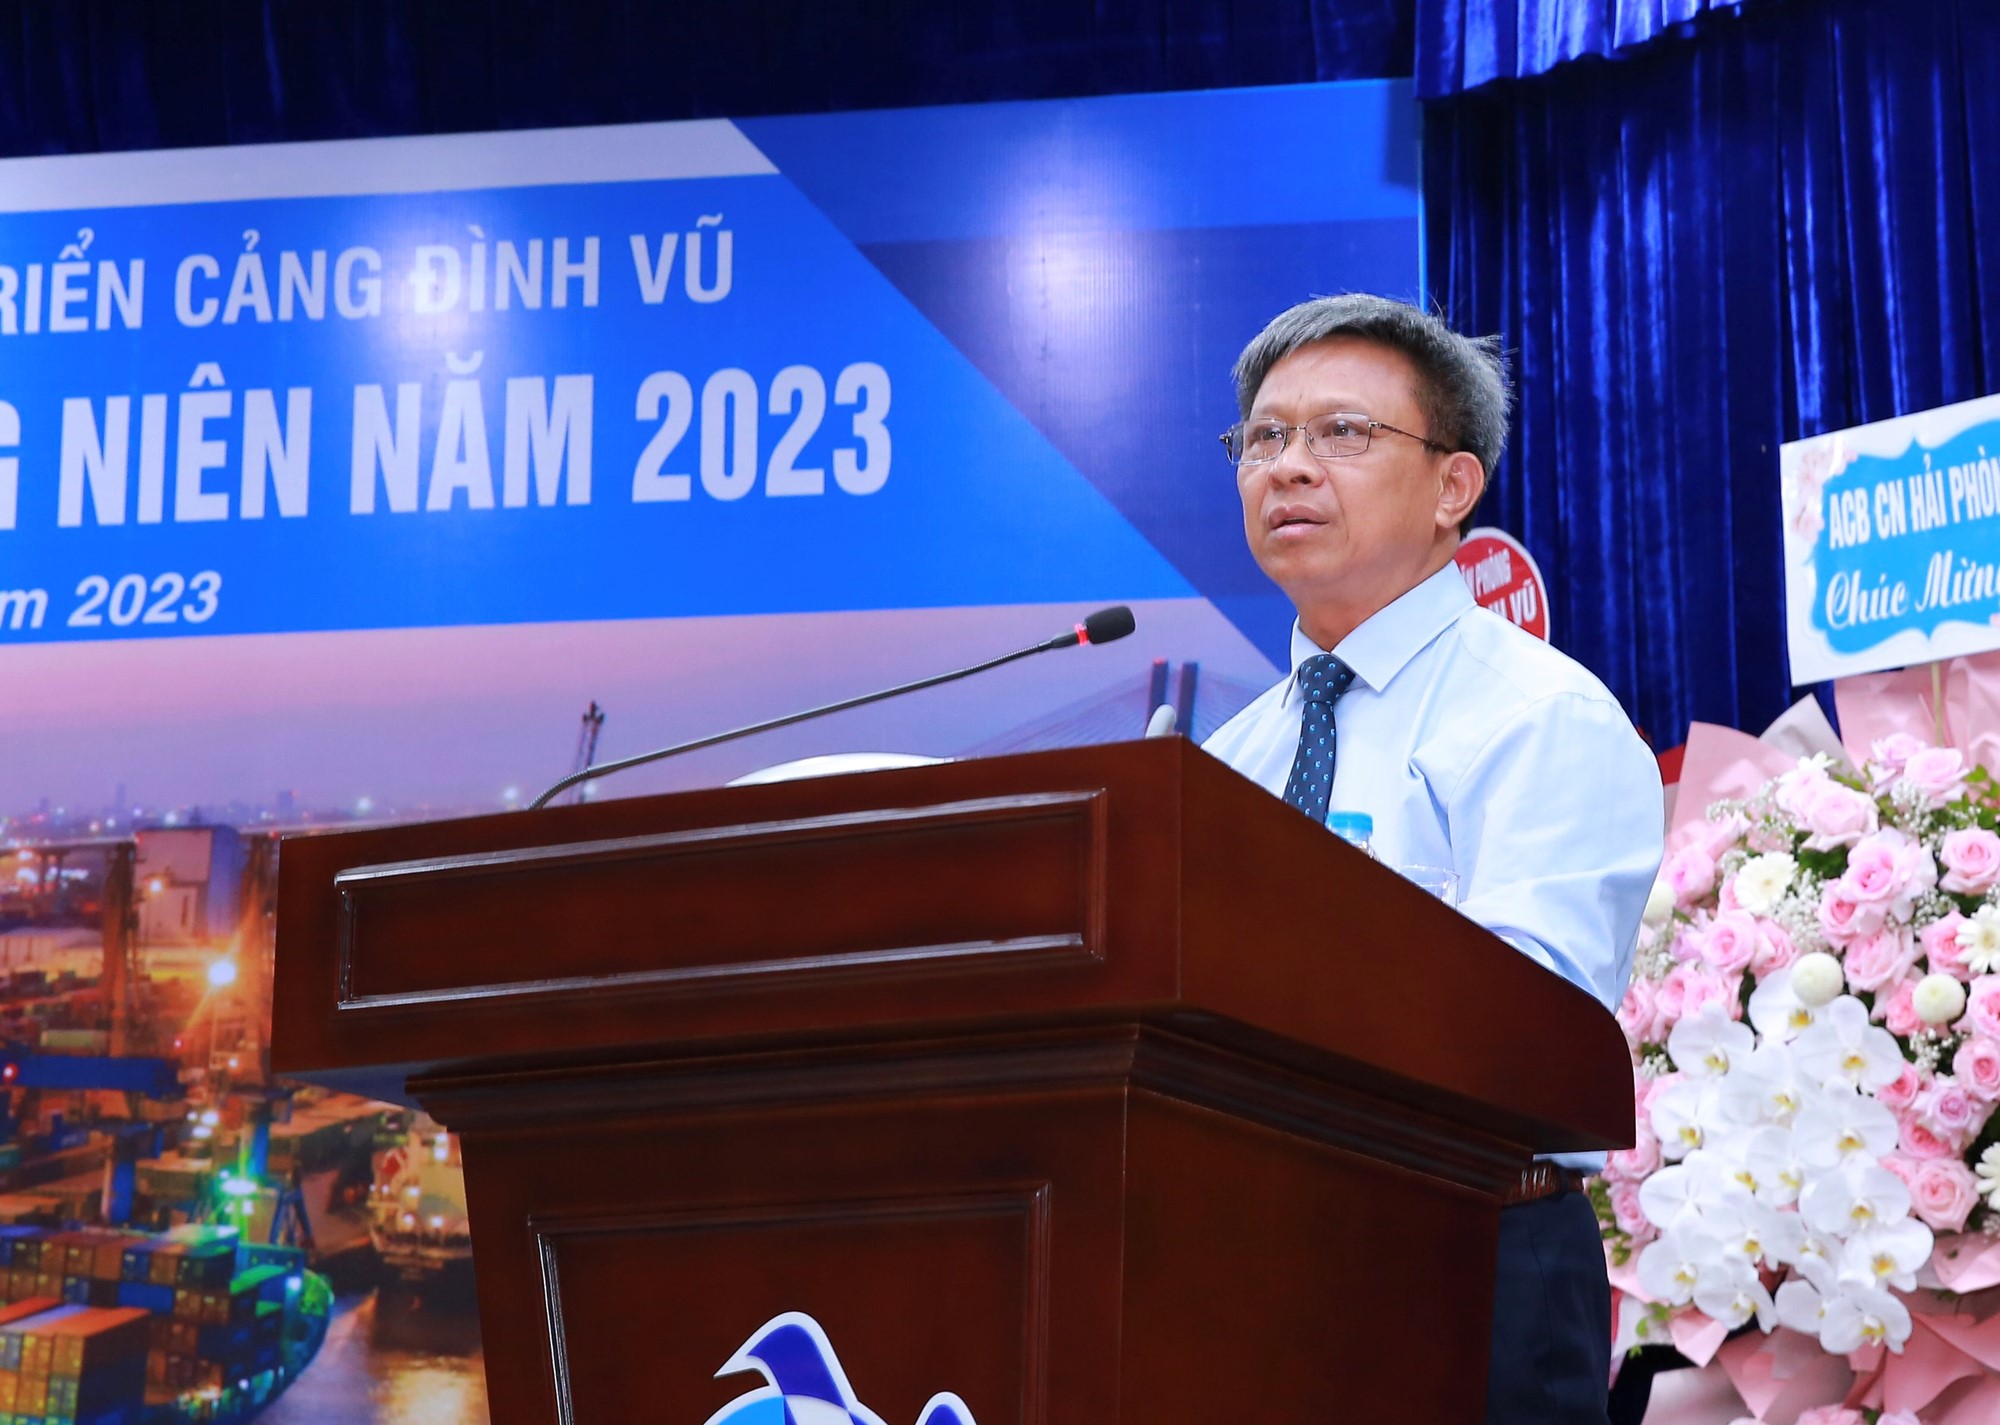 Ông Vũ Tuấn Dương điều hành Đại hội biểu quyết thông qua Quy chế Đại hội và Quy chế ứng cử, đề cử thành viên HĐQT, BKS nhiệm kỳ 2023-2028